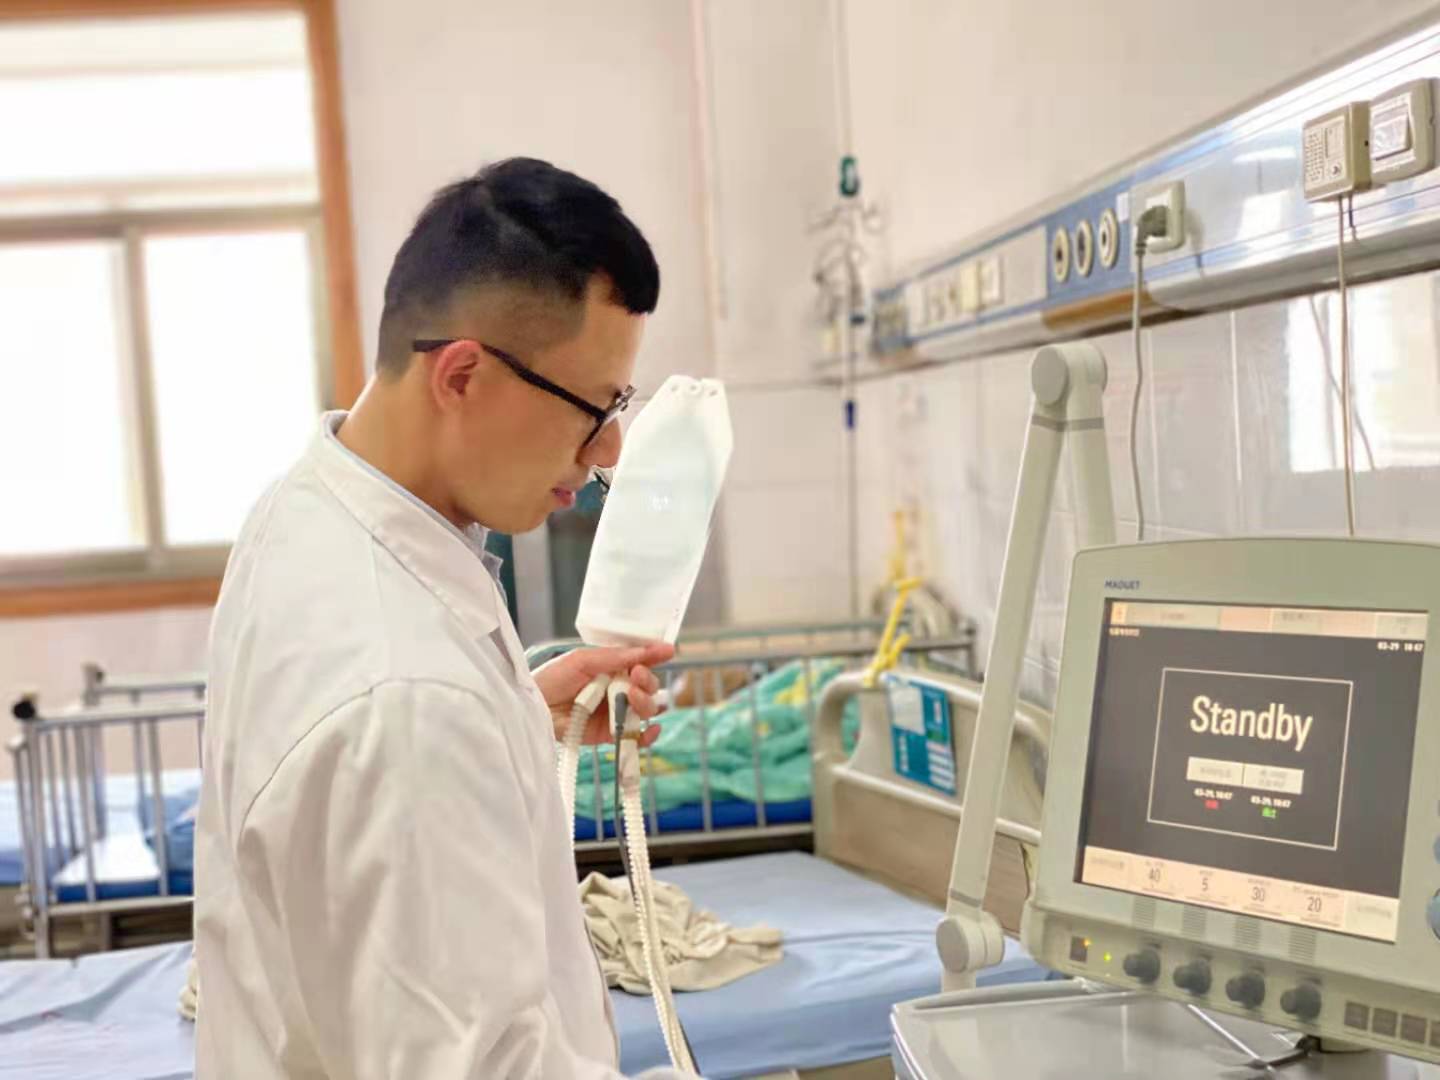 输液结束自动停止不会回血，江西省儿童医院一男护士的四项国家专利造福患者